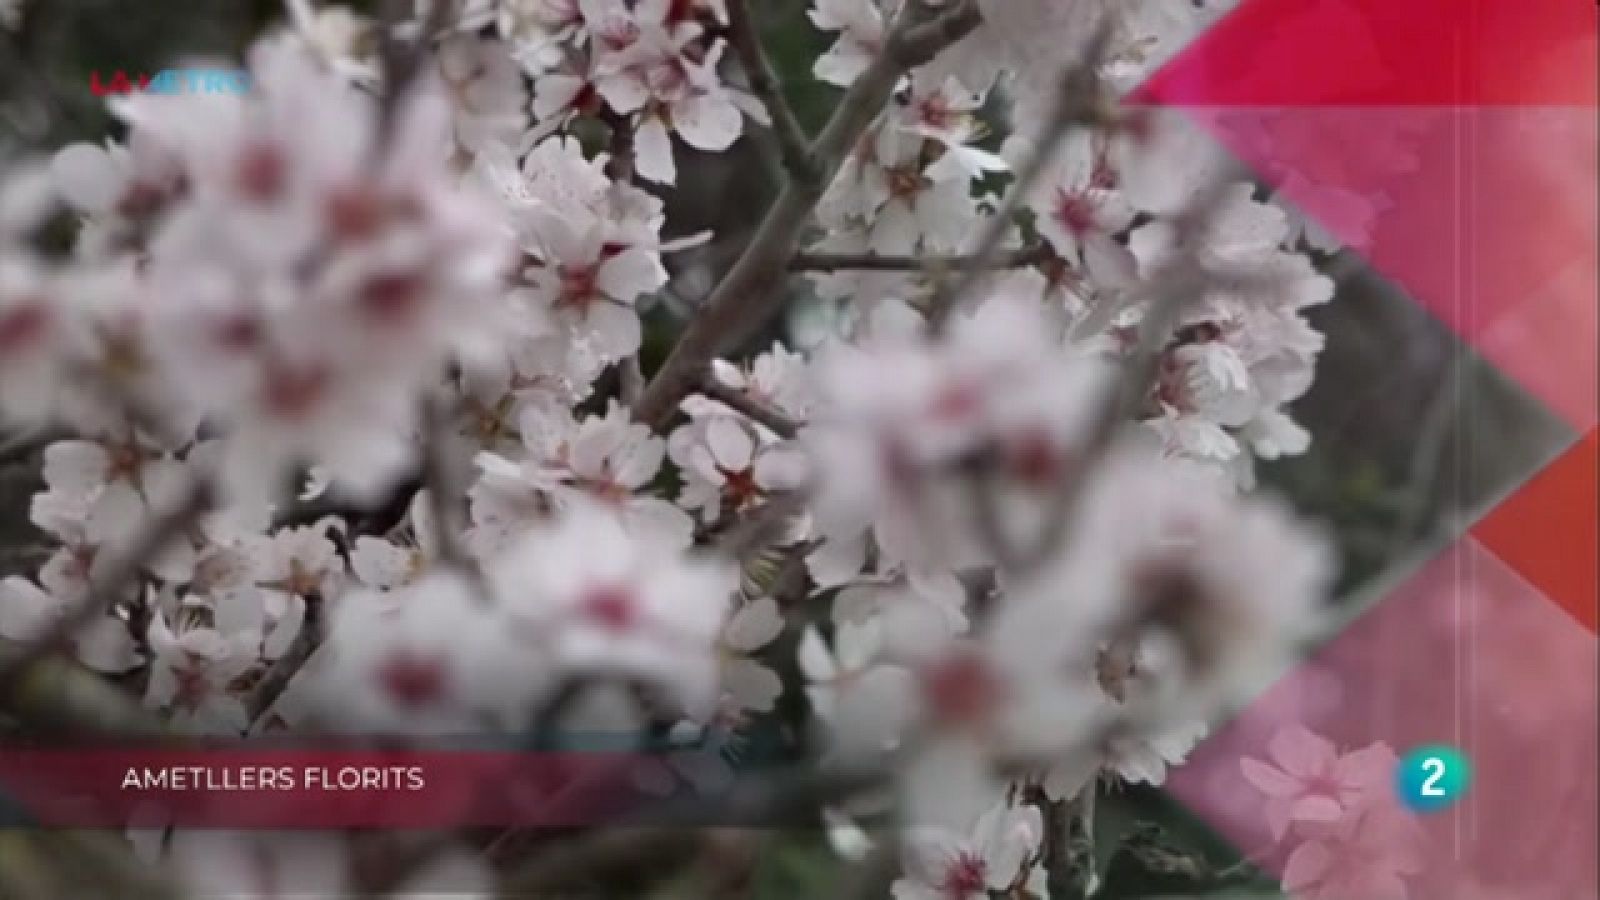 Ametllers florits, Brossa marina i Buscant una oportunitat | La Metro - RTVE Catalunya